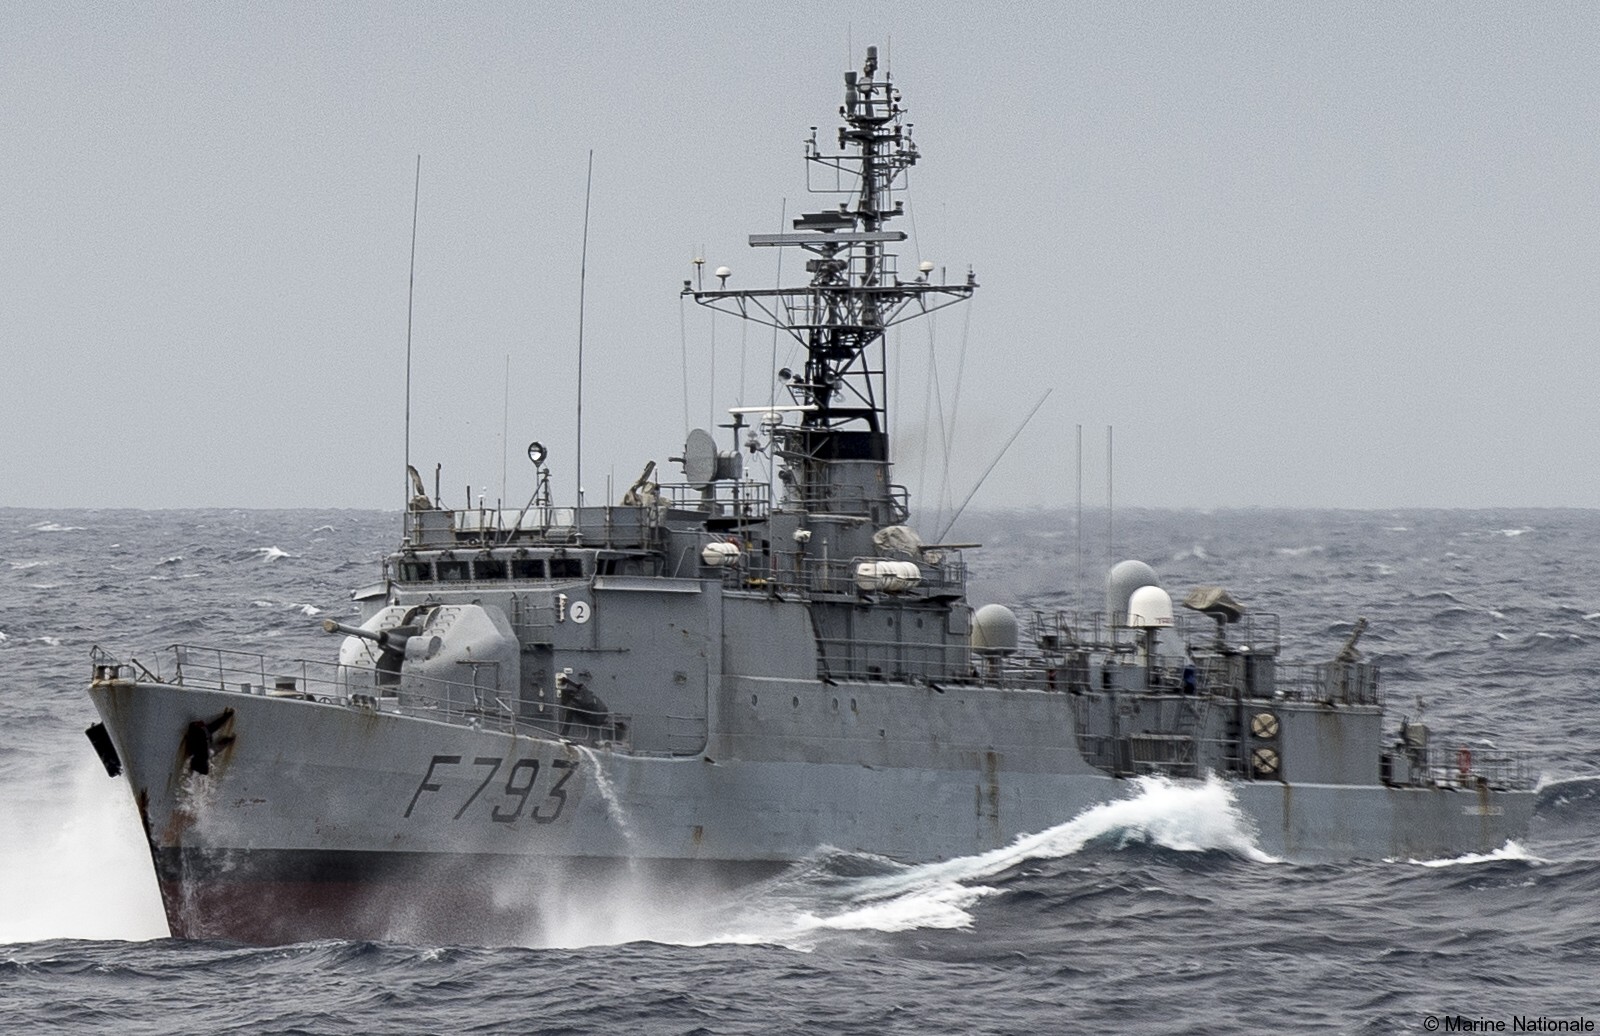 f-793 fs commandant blaison d'estienne d'orves class corvette type a69 aviso french navy marine nationale 05